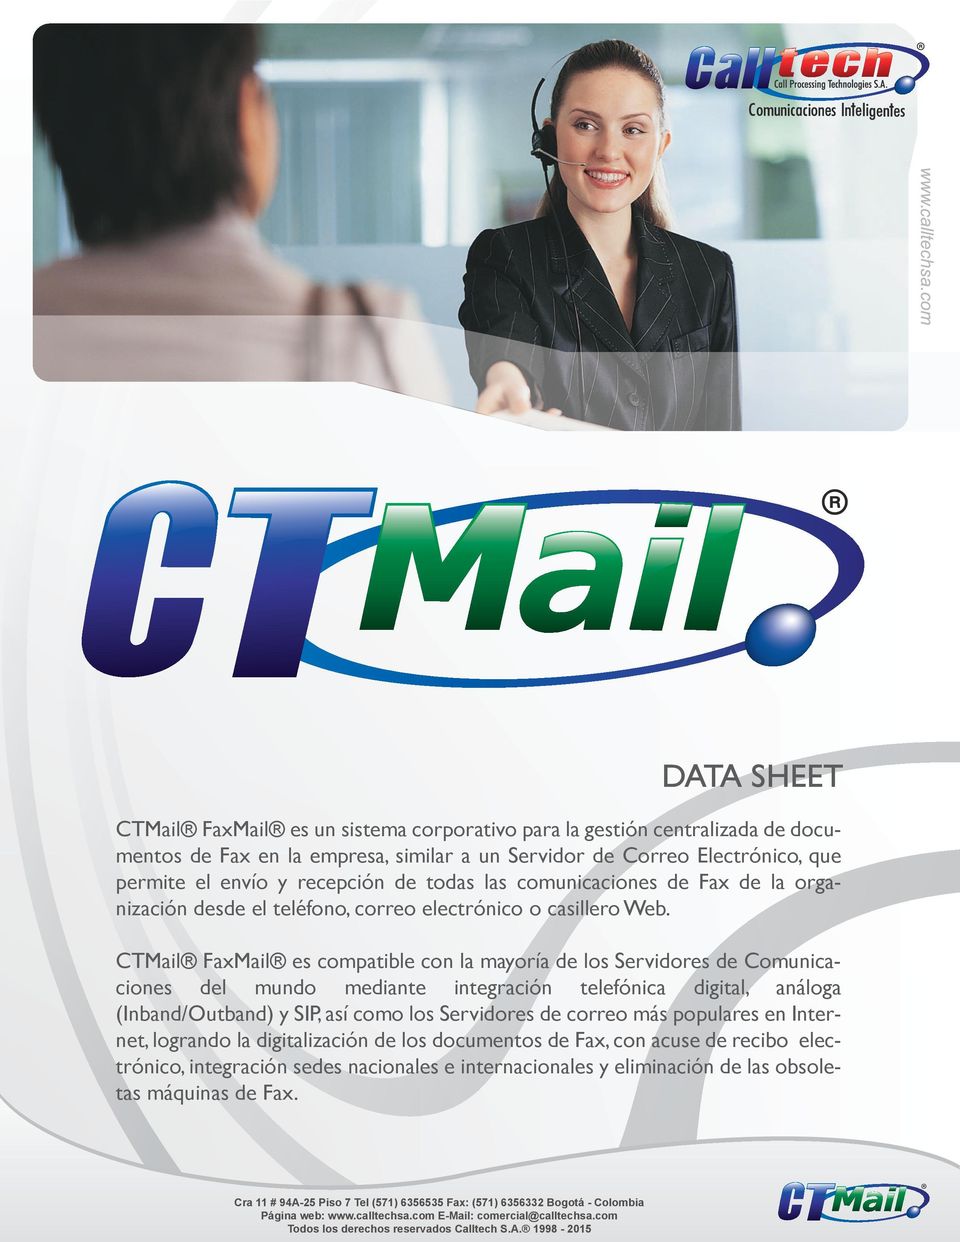 CTMail FaxMail es compatible con la mayoría de los Servidores de Comunicaciones del mundo mediante integración telefónica digital, análoga (Inband/Outband) y SIP, así como los